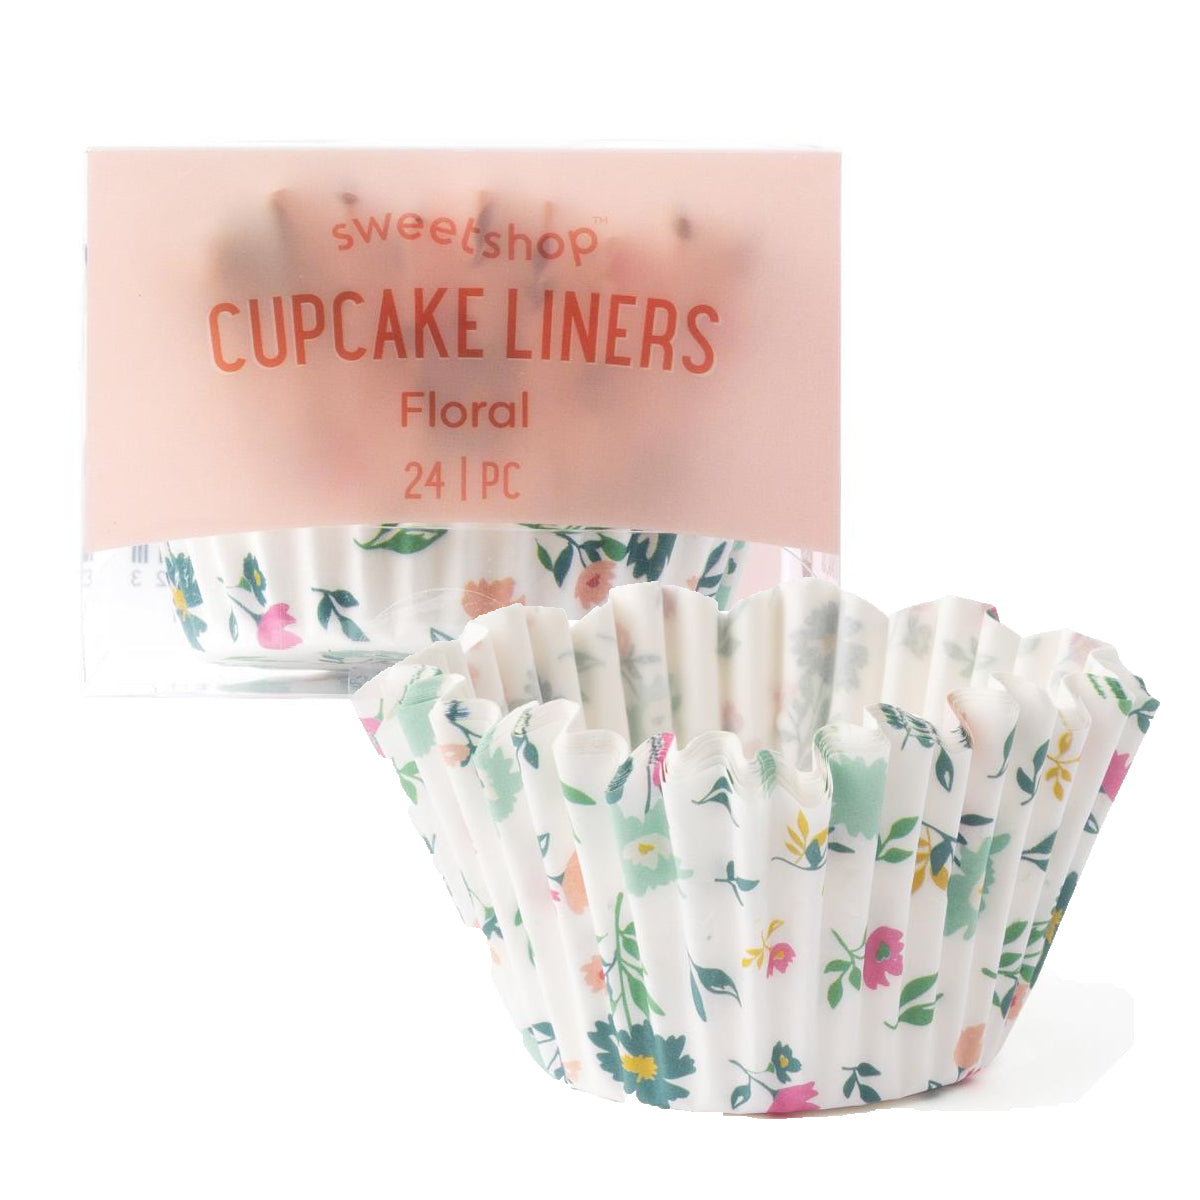 Sweetshop Cupcake Liners: Floral | www.sprinklebeesweet.com